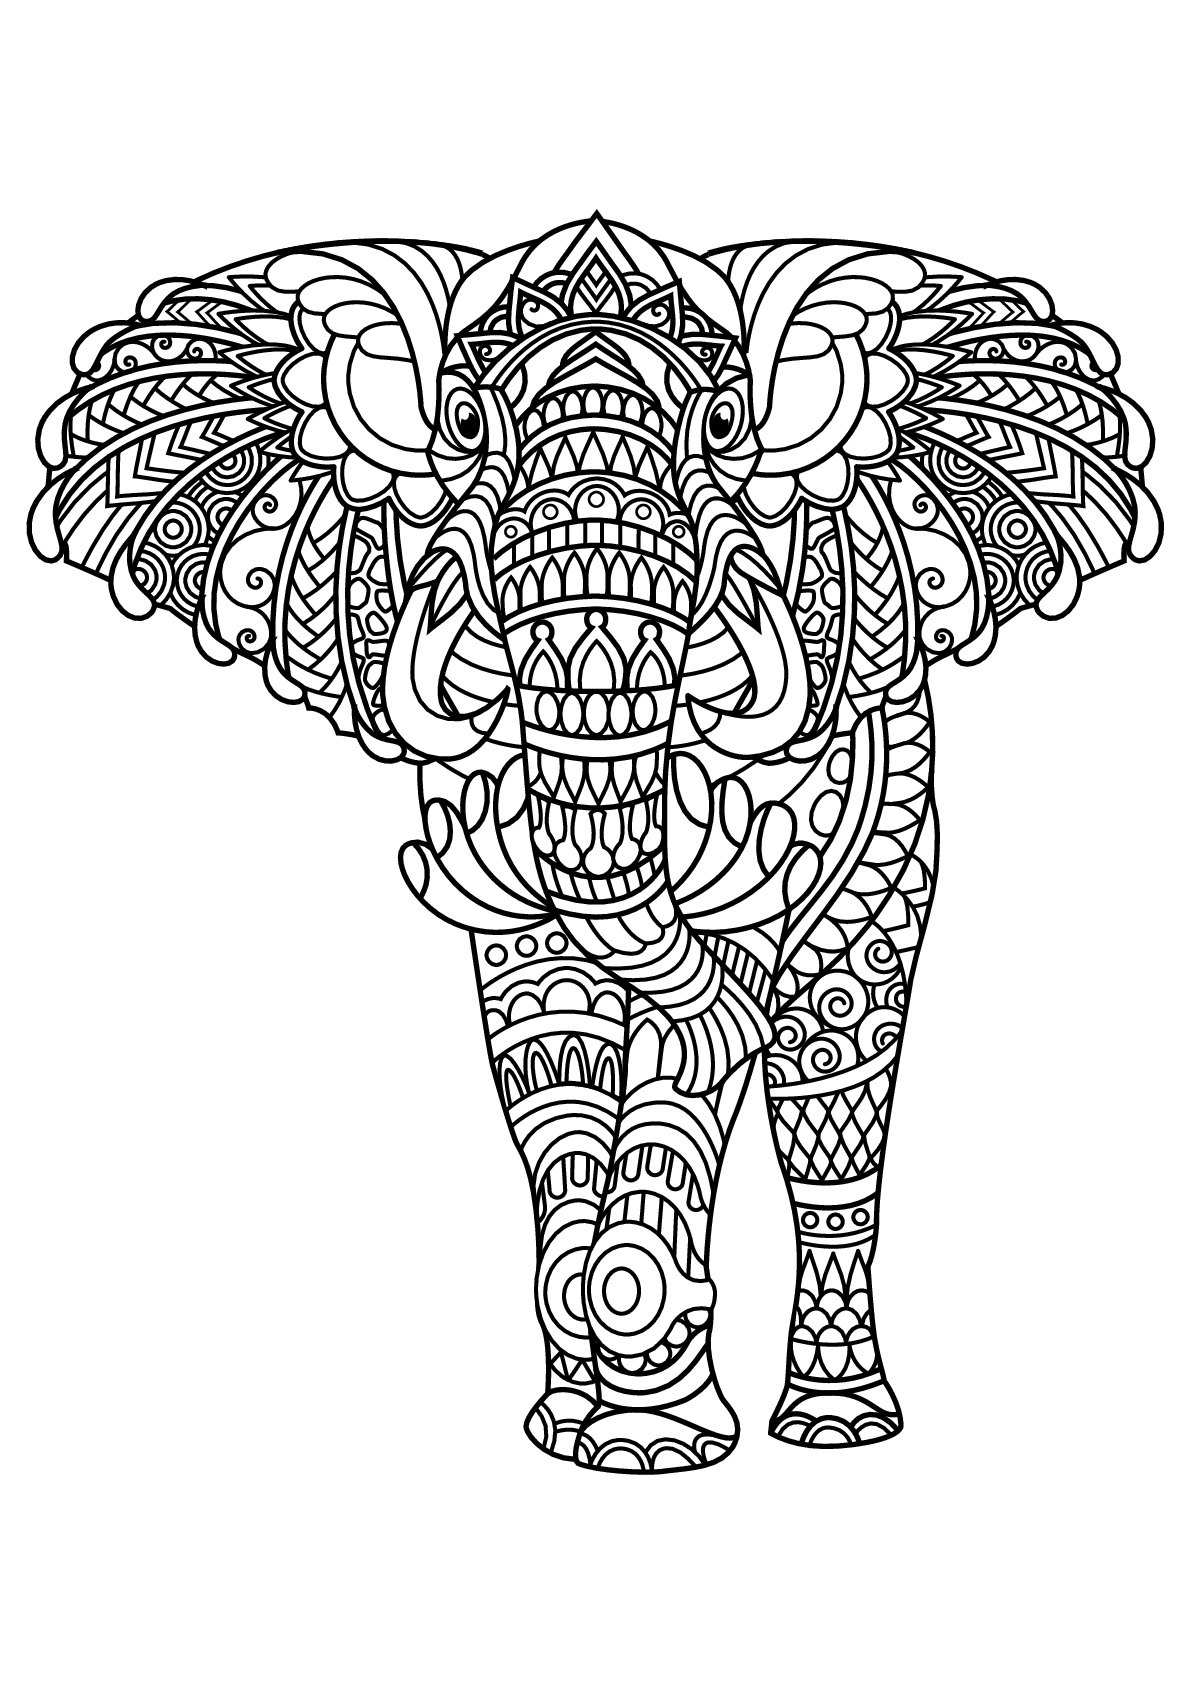 Elefante majestoso, com motivos harmoniosos e complexos